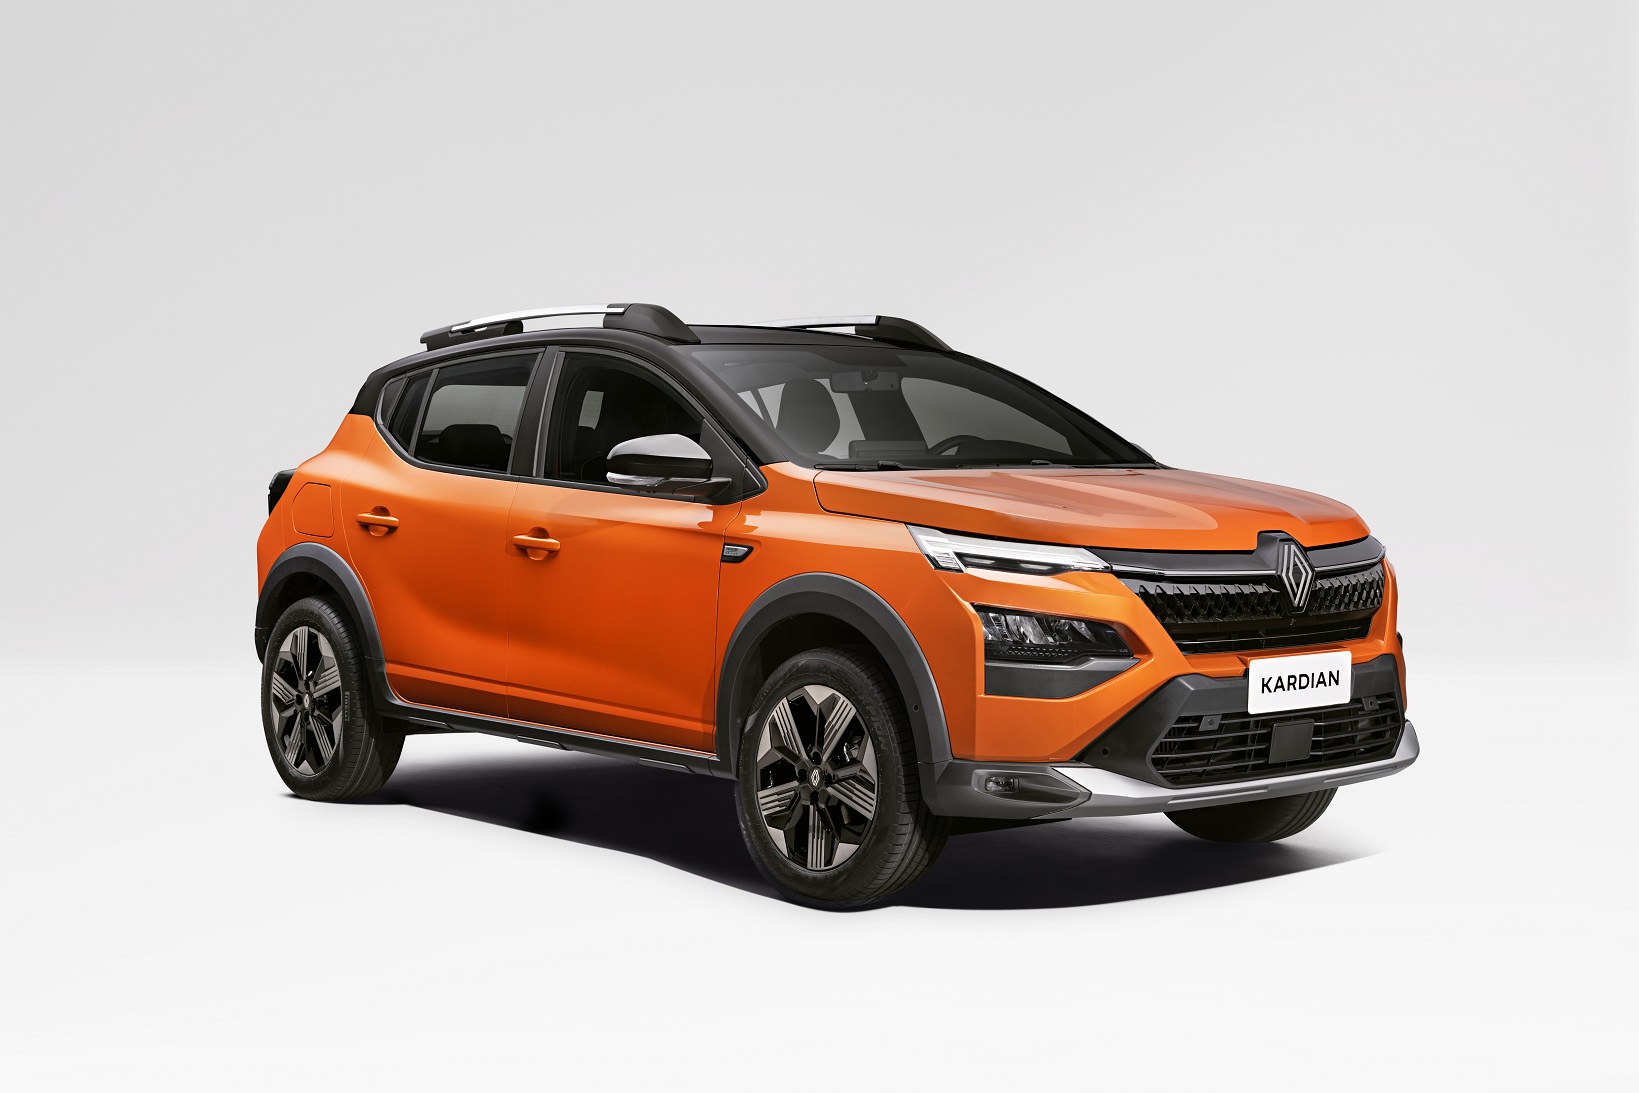 Renault Kardian: novo SUV compacto chega para brigar com Pulse e Nivus